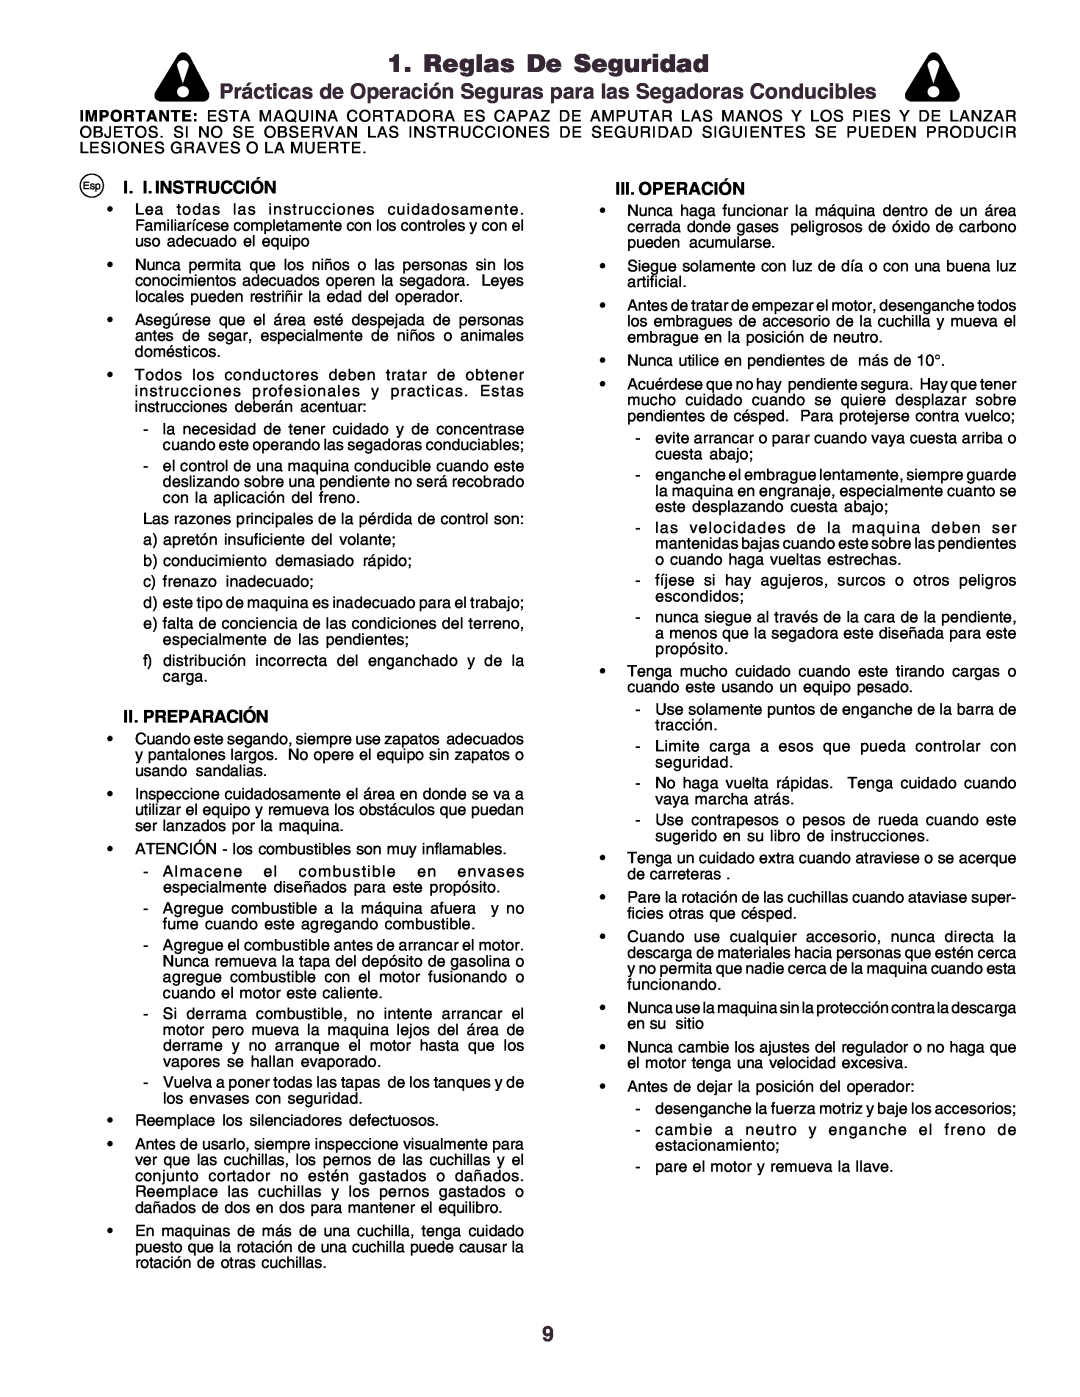 Husqvarna CT130 Reglas De Seguridad, Prácticas de Operación Seguras para las Segadoras Conducibles, I. I. Instrucción 